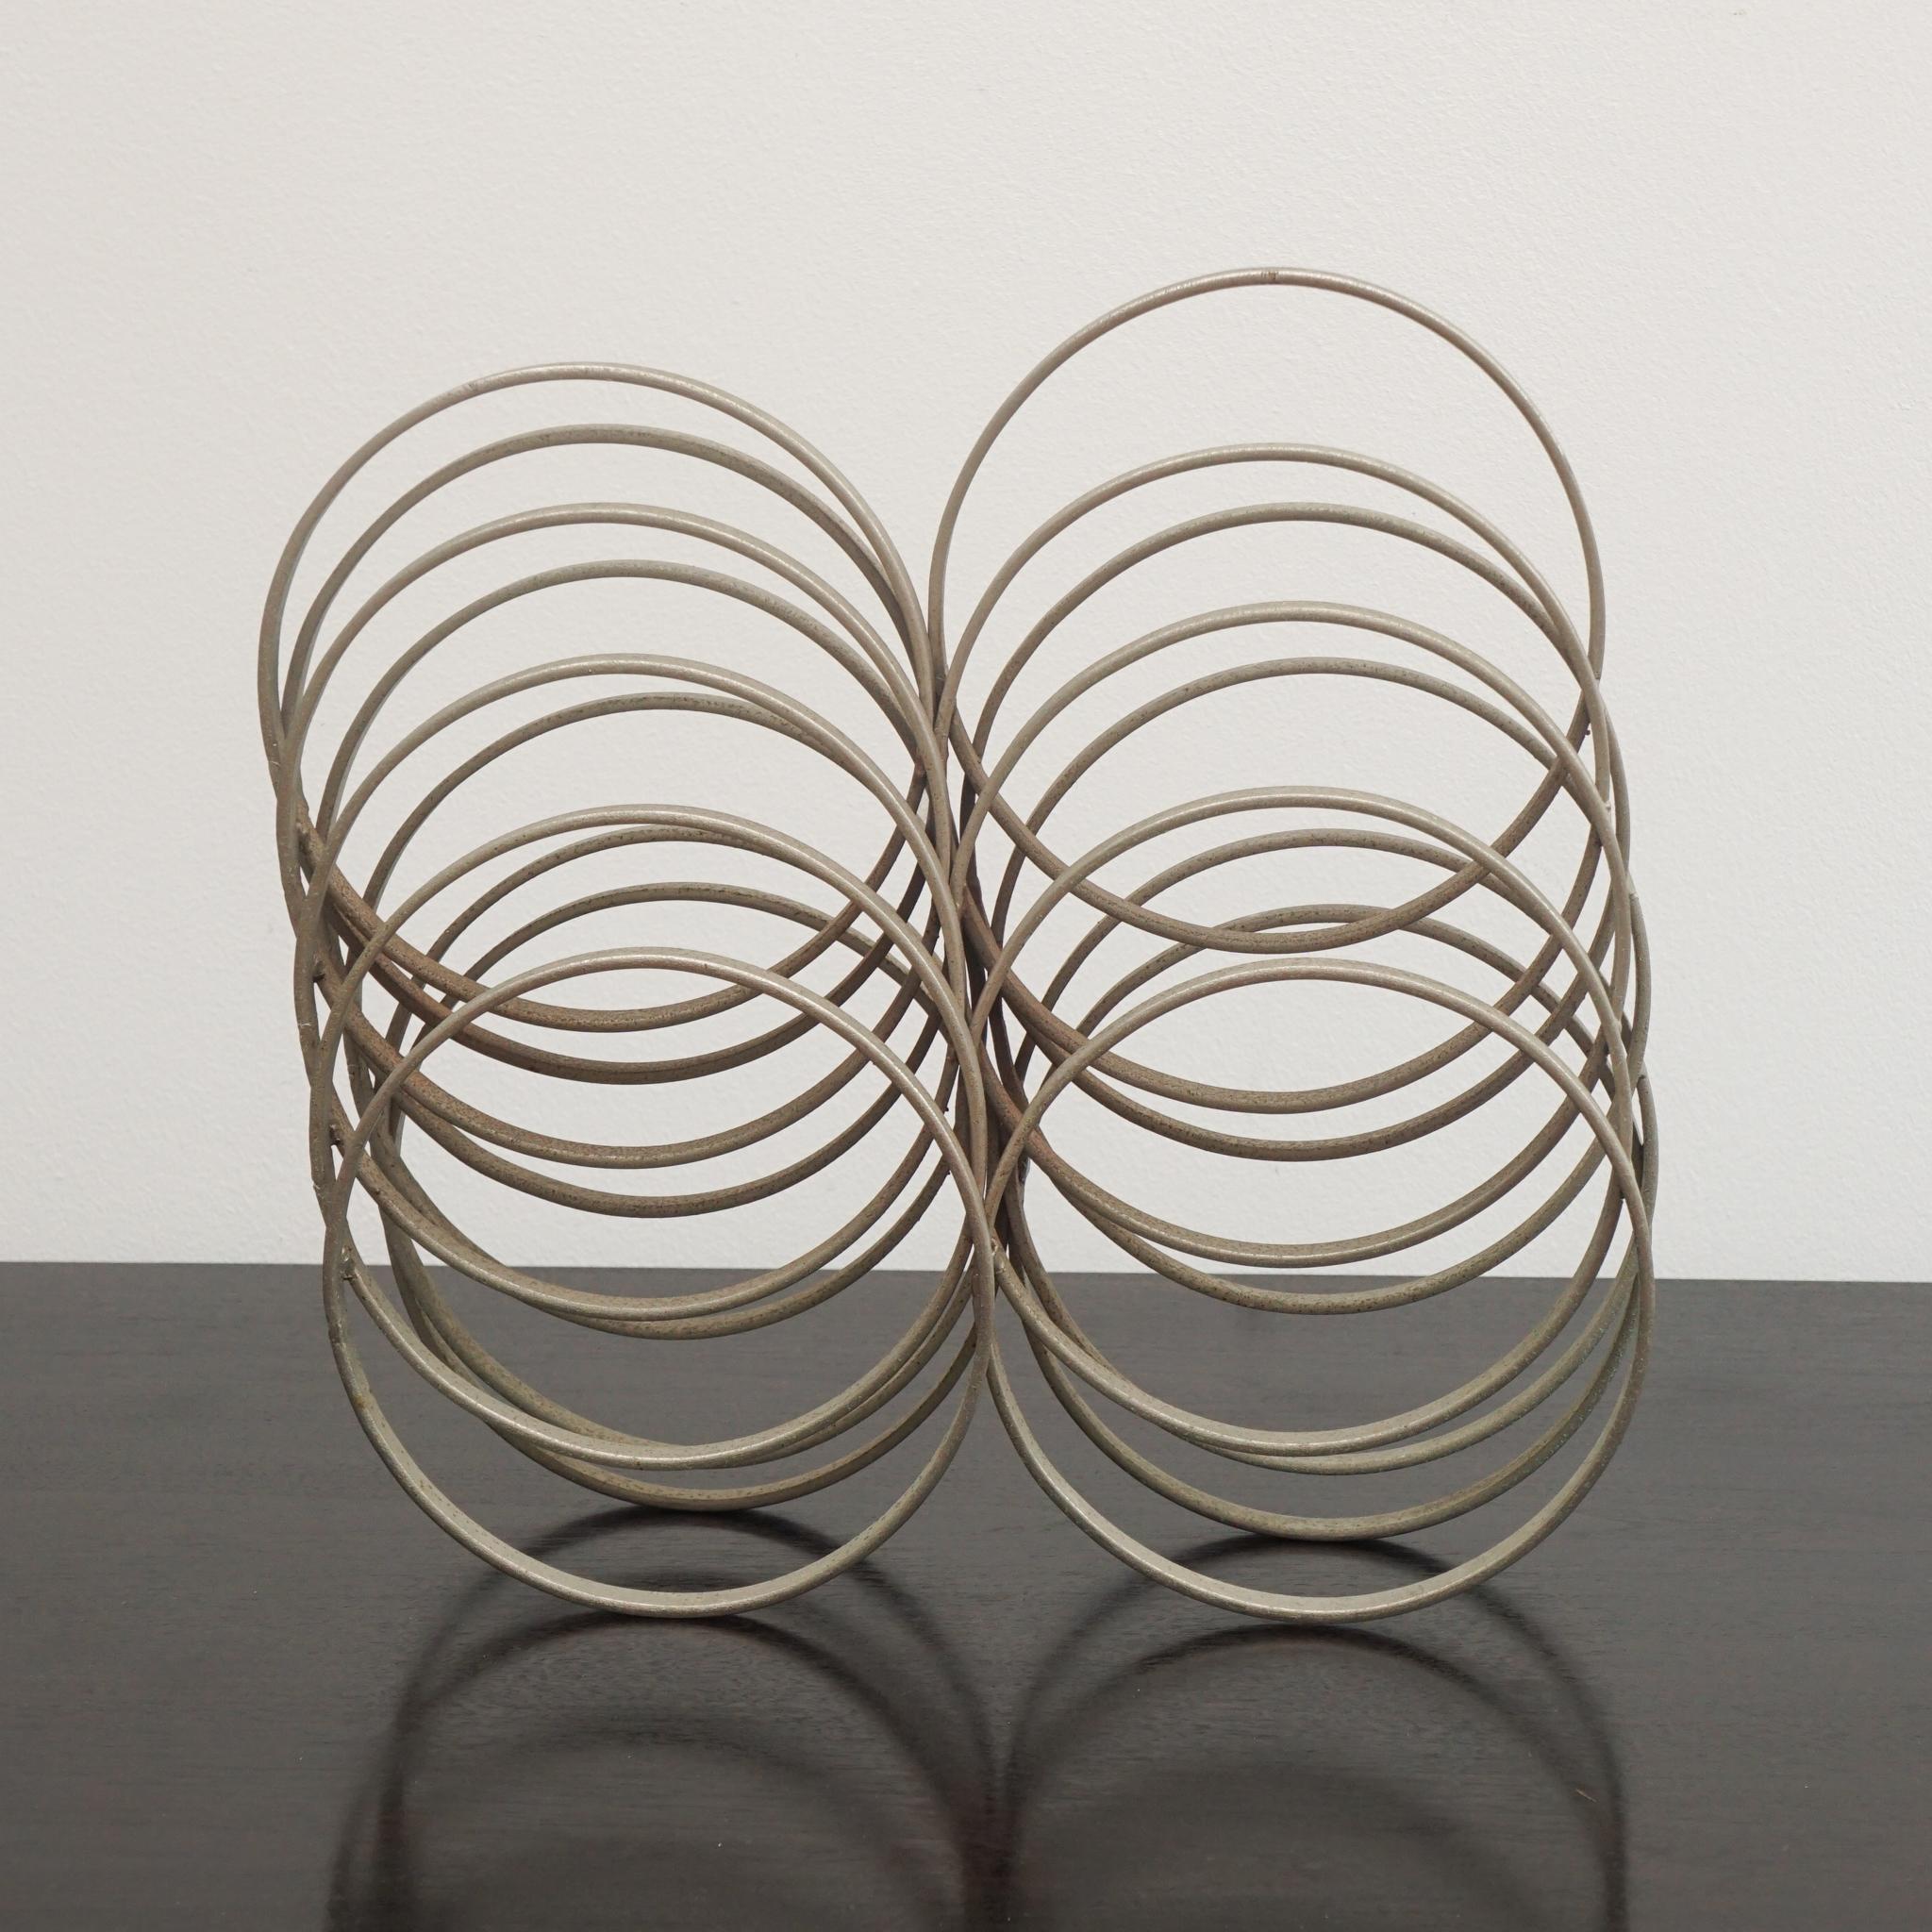 Des anneaux en métal ont été utilisés pour créer l'insolite sculpture en gradins présentée ici, provenant d'Italie vers les années 1970.   Disposées en ordre croissant ou décroissant, les bobines sont soudées en place pour créer une œuvre d'art